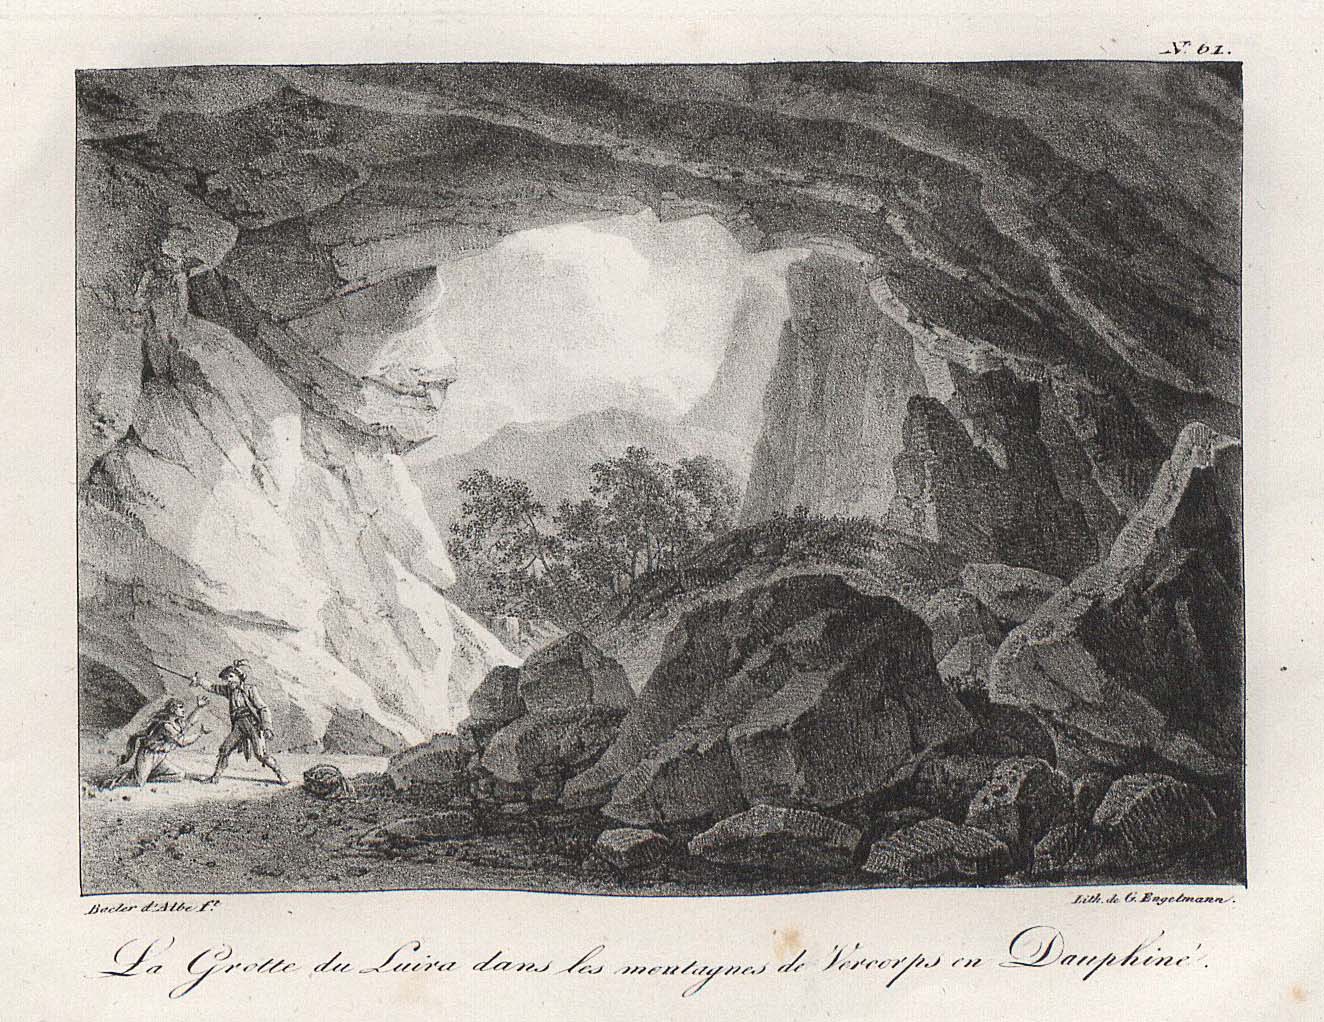 La grotte du Luira dans les montagnes de Vercorps en Dauphiné